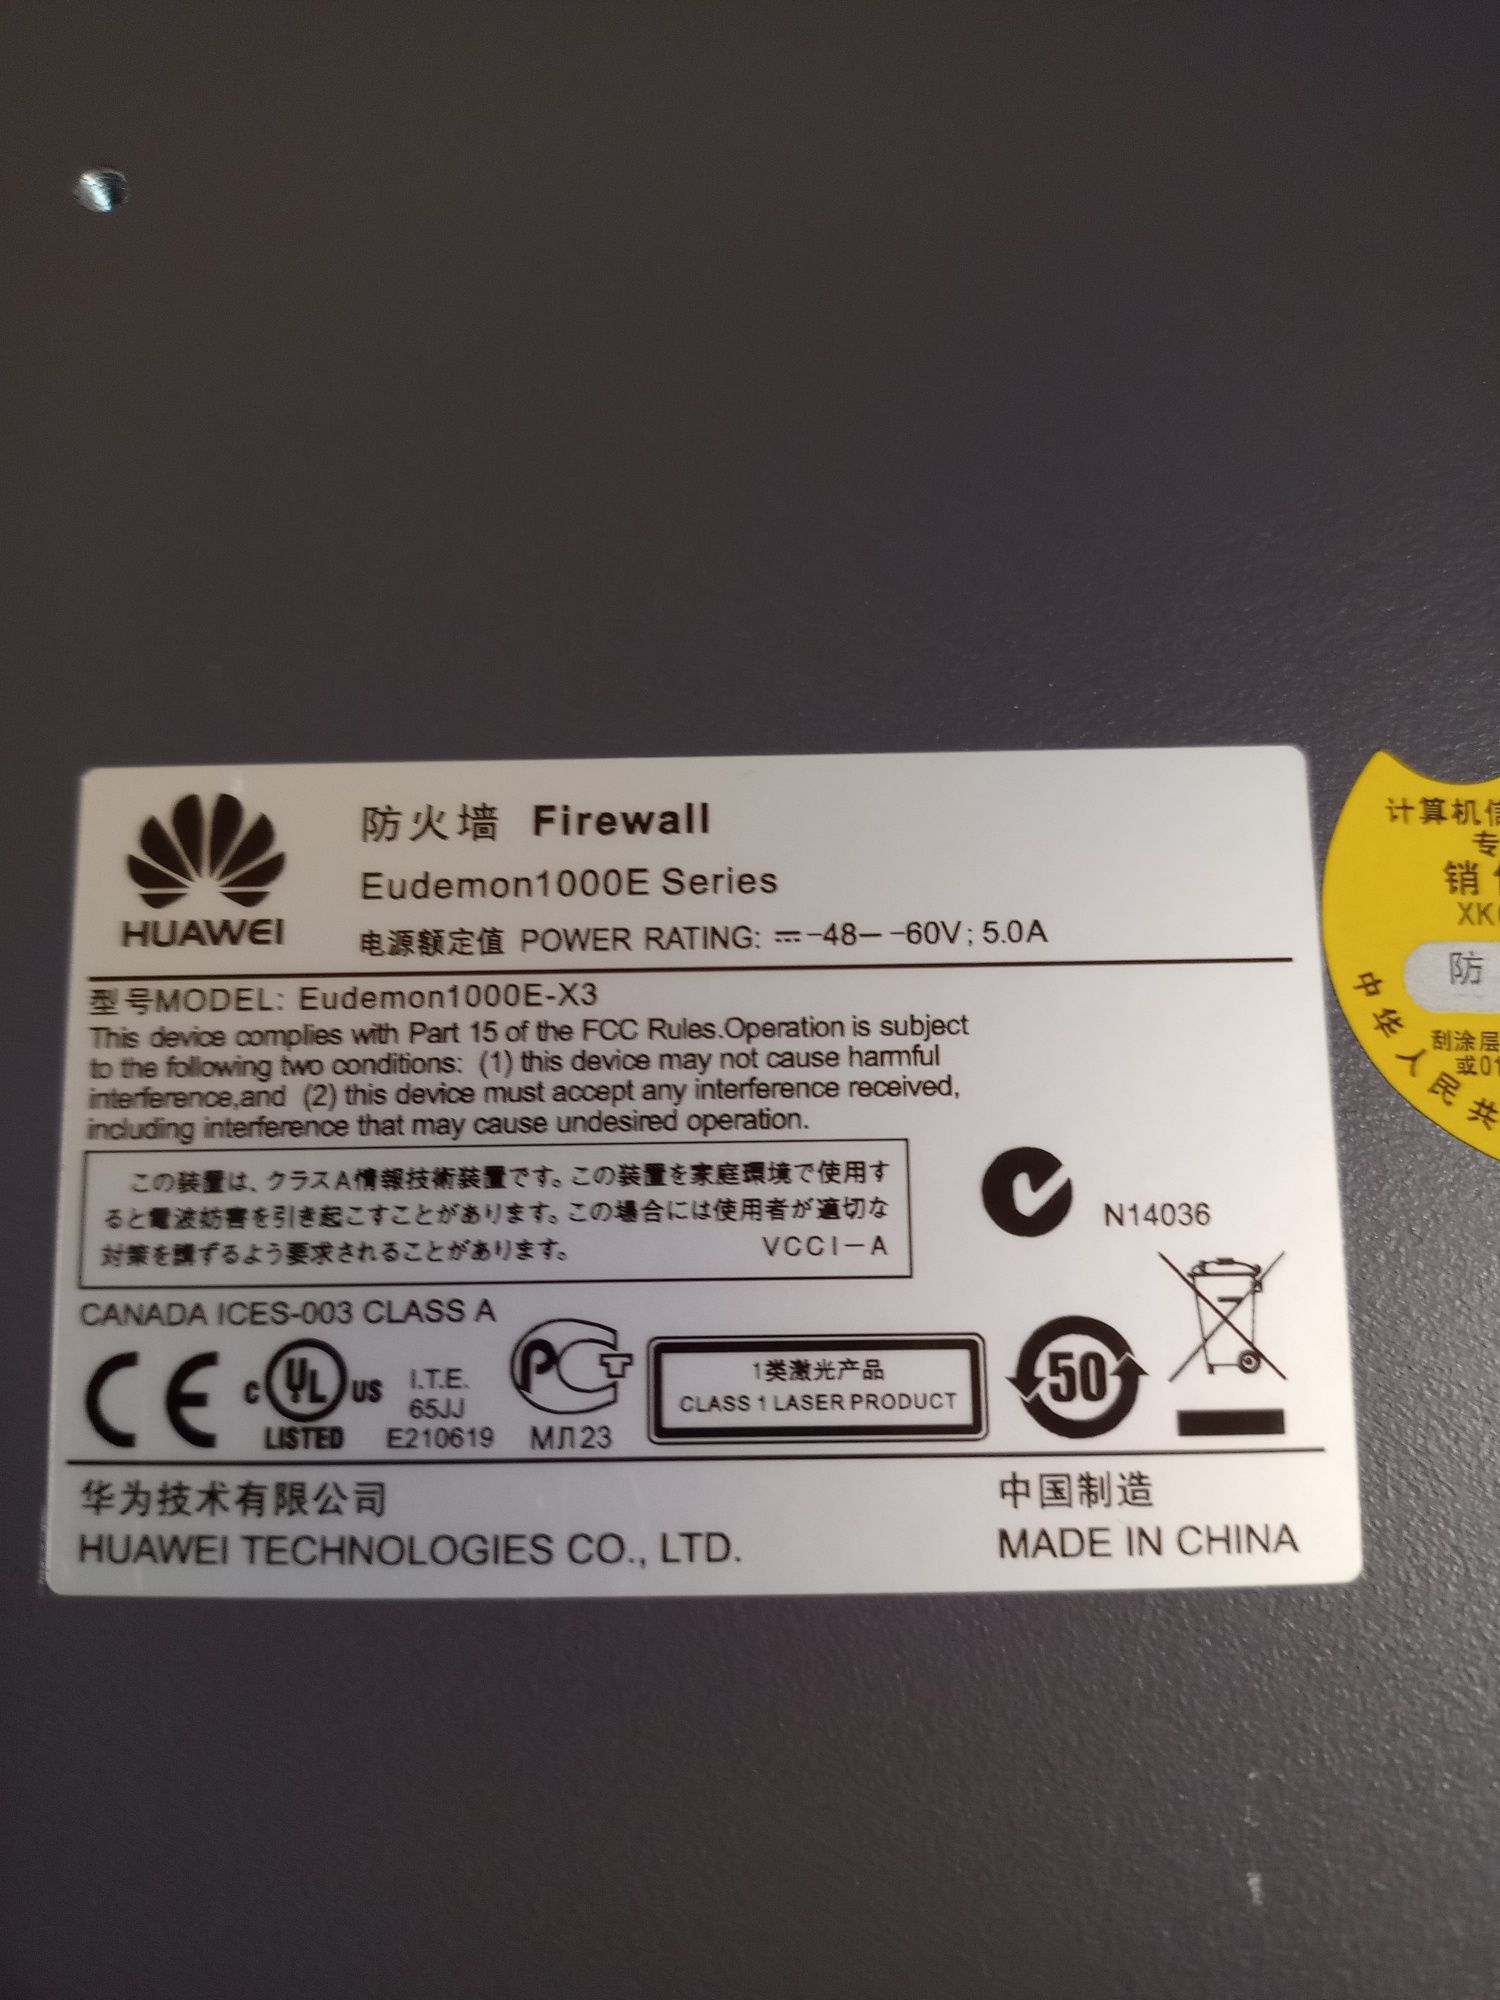 HUAWEI Firewall Eudemon 1000E-X3